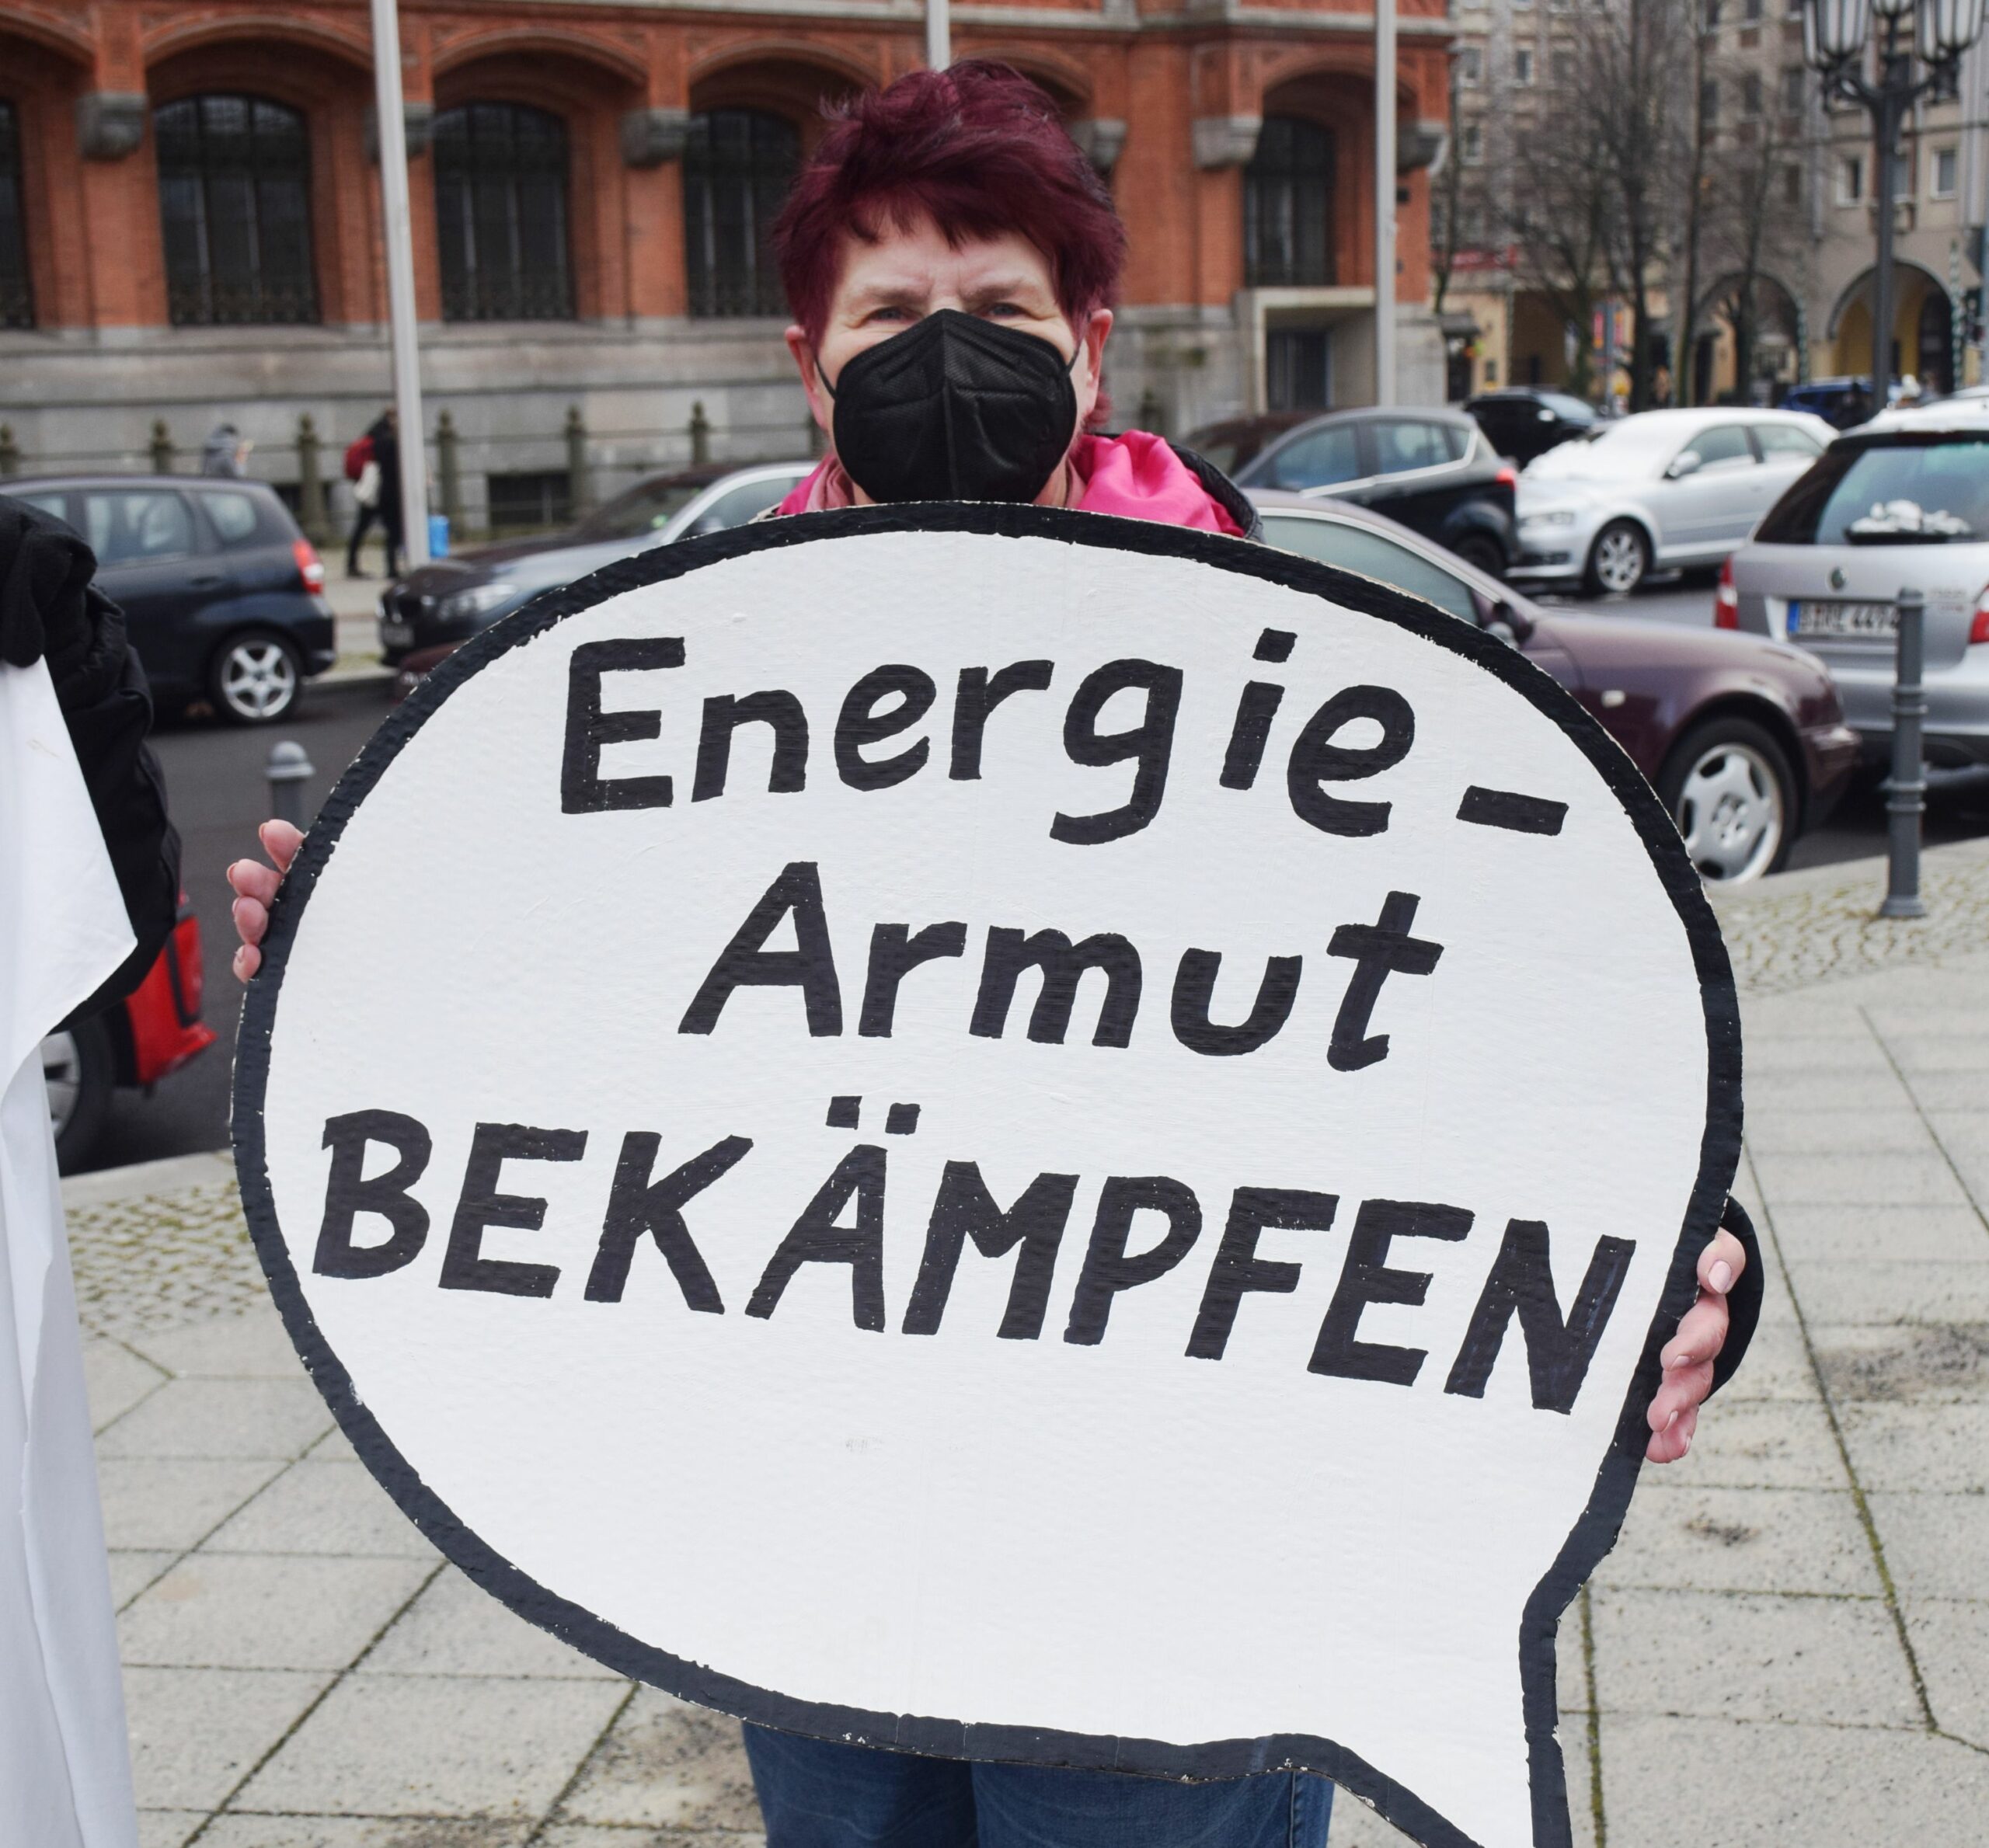 0301 keller Energiearmut stoppen hiksch scaled - Almosen helfen nicht beim Heizen - Energiepreisstoppkampagne - Wirtschaft & Soziales